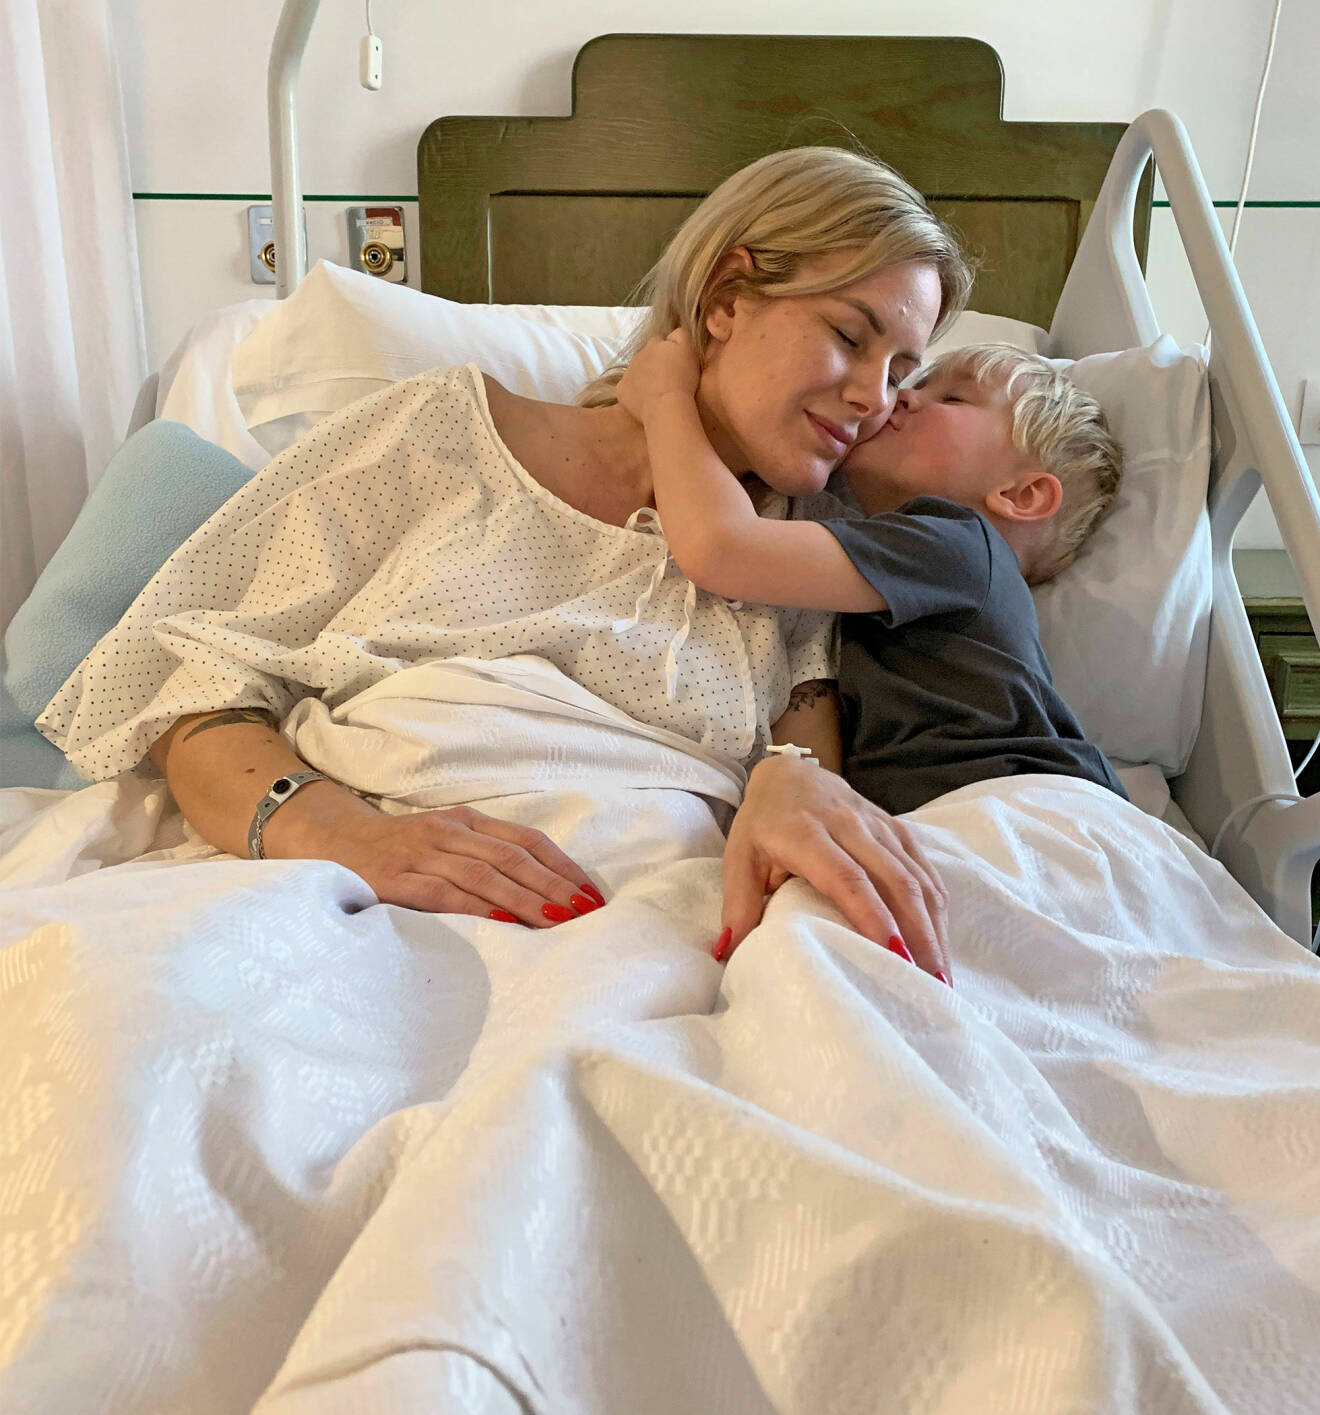 Elin ligger i en sjukhussäng och får en puss av sin lille son.